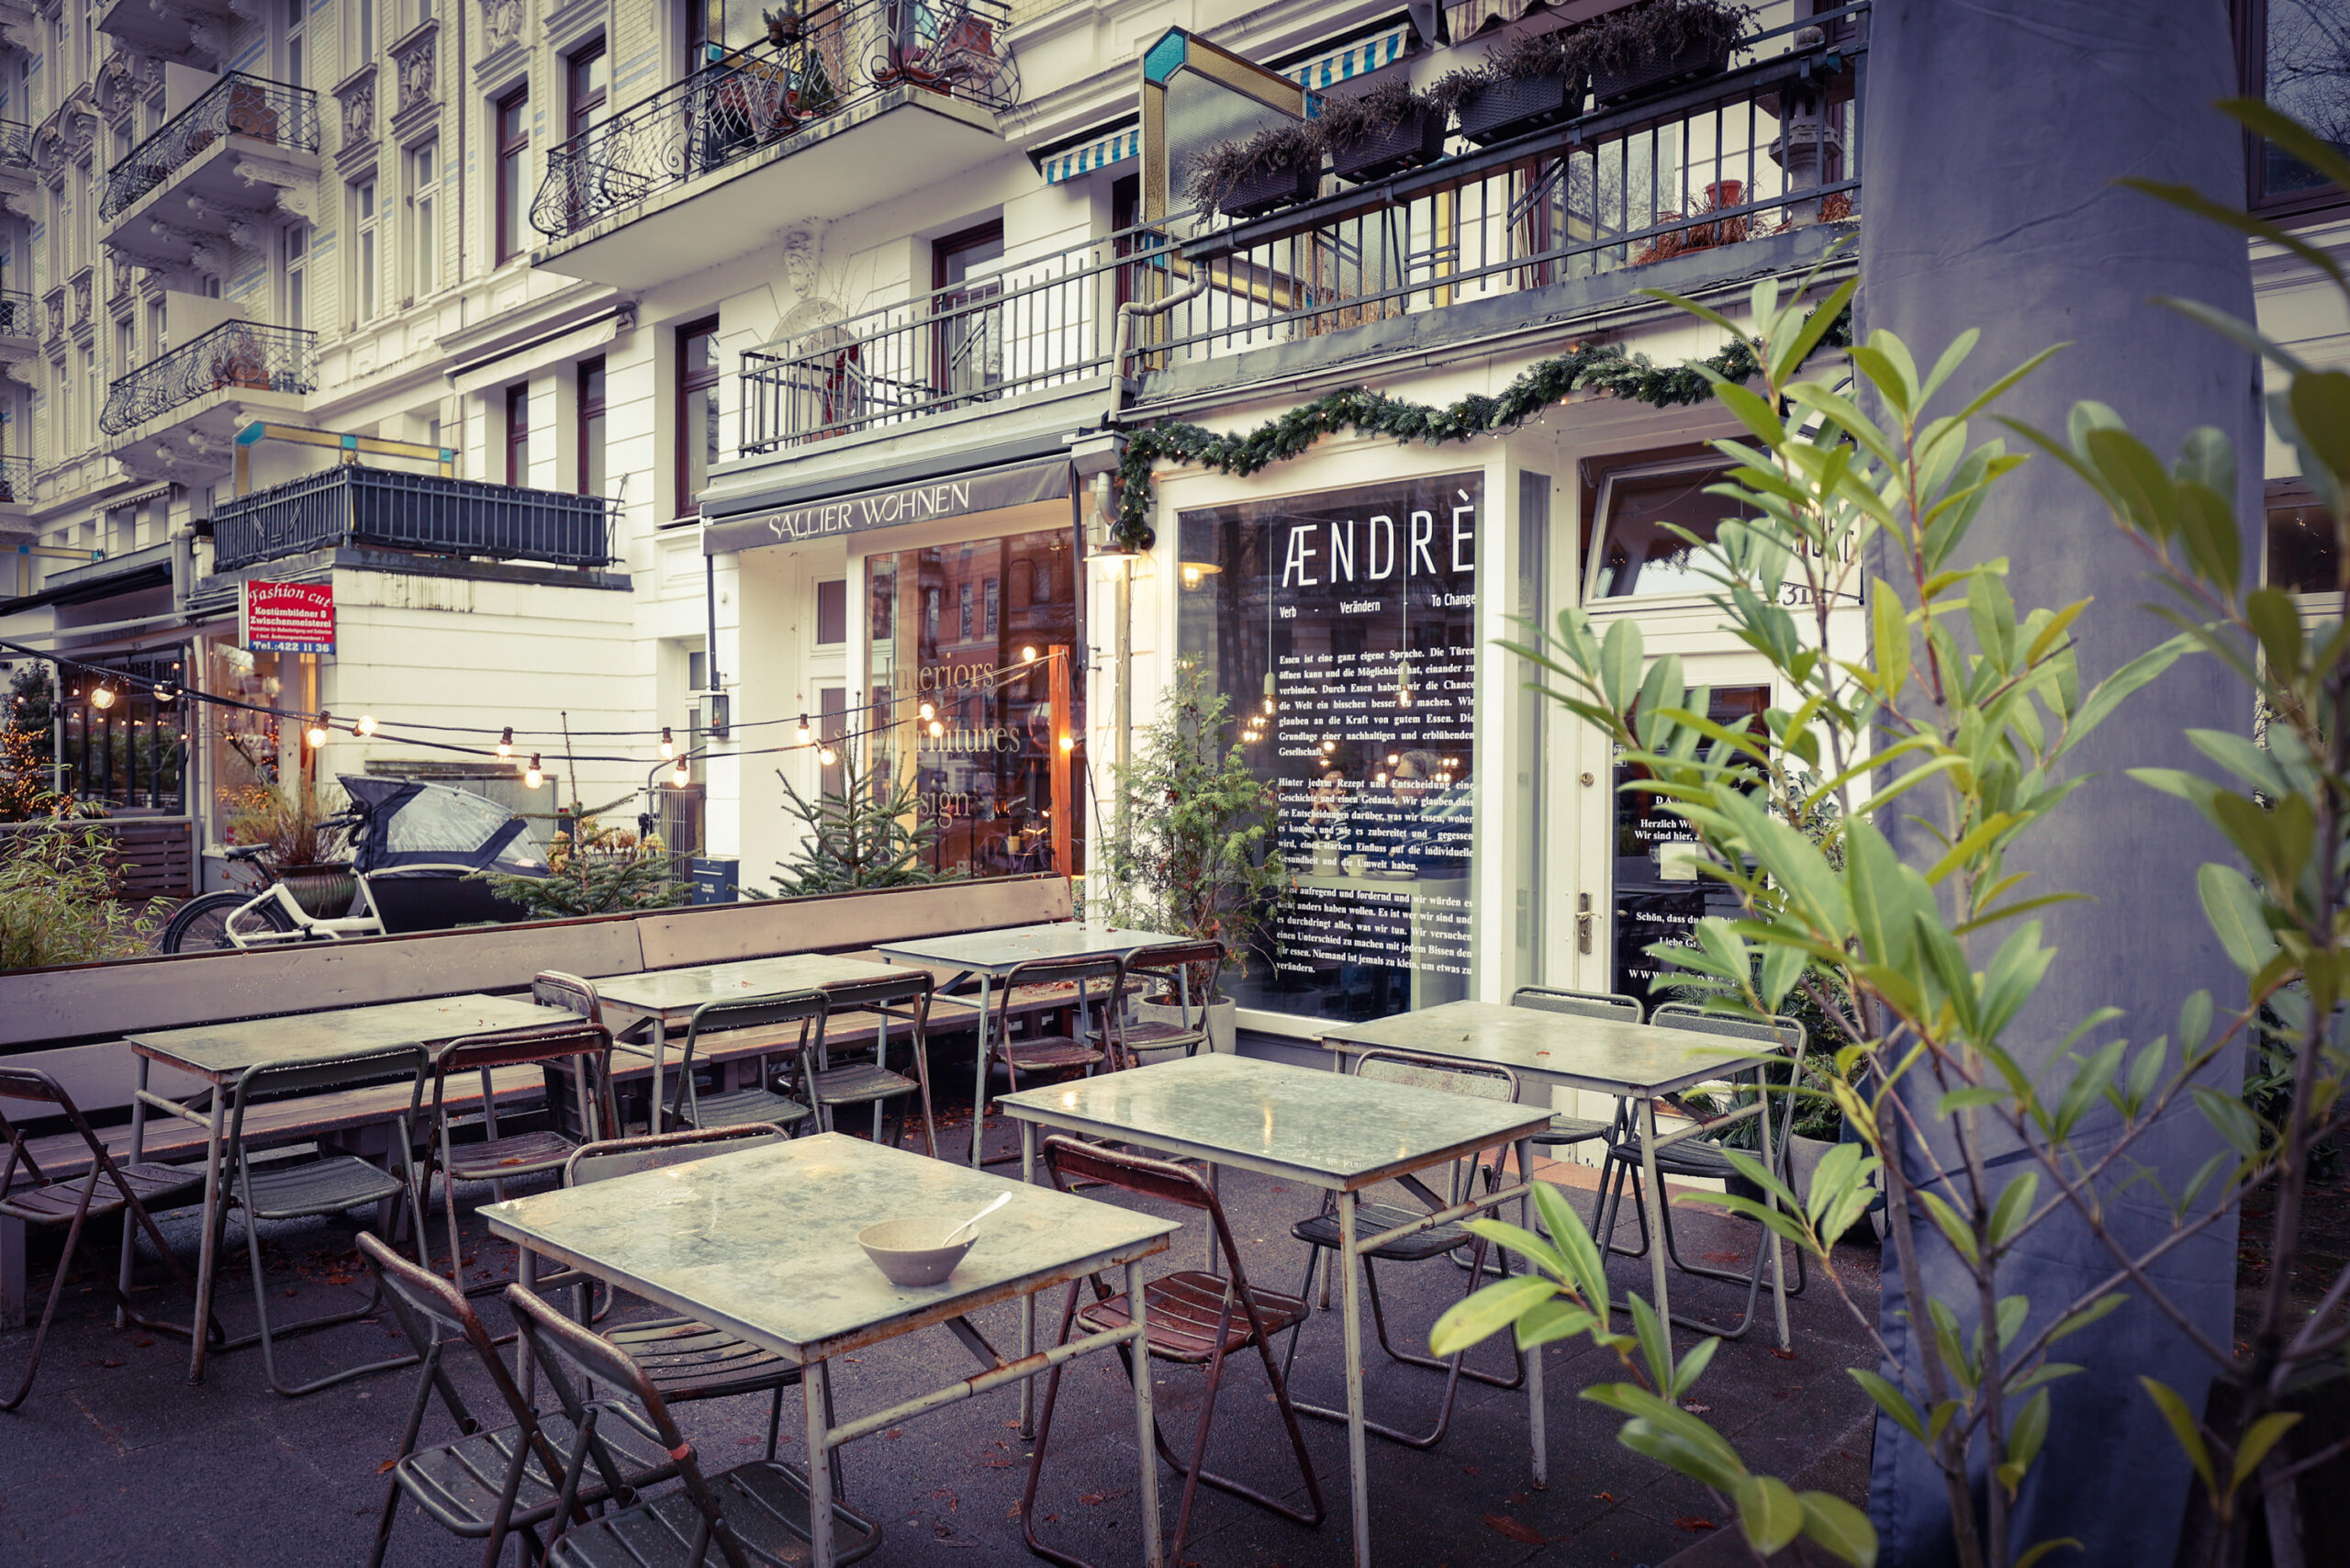 Das Restaurant „Aendrè“ am Lehmweg von außen, davor Tische und Stühle